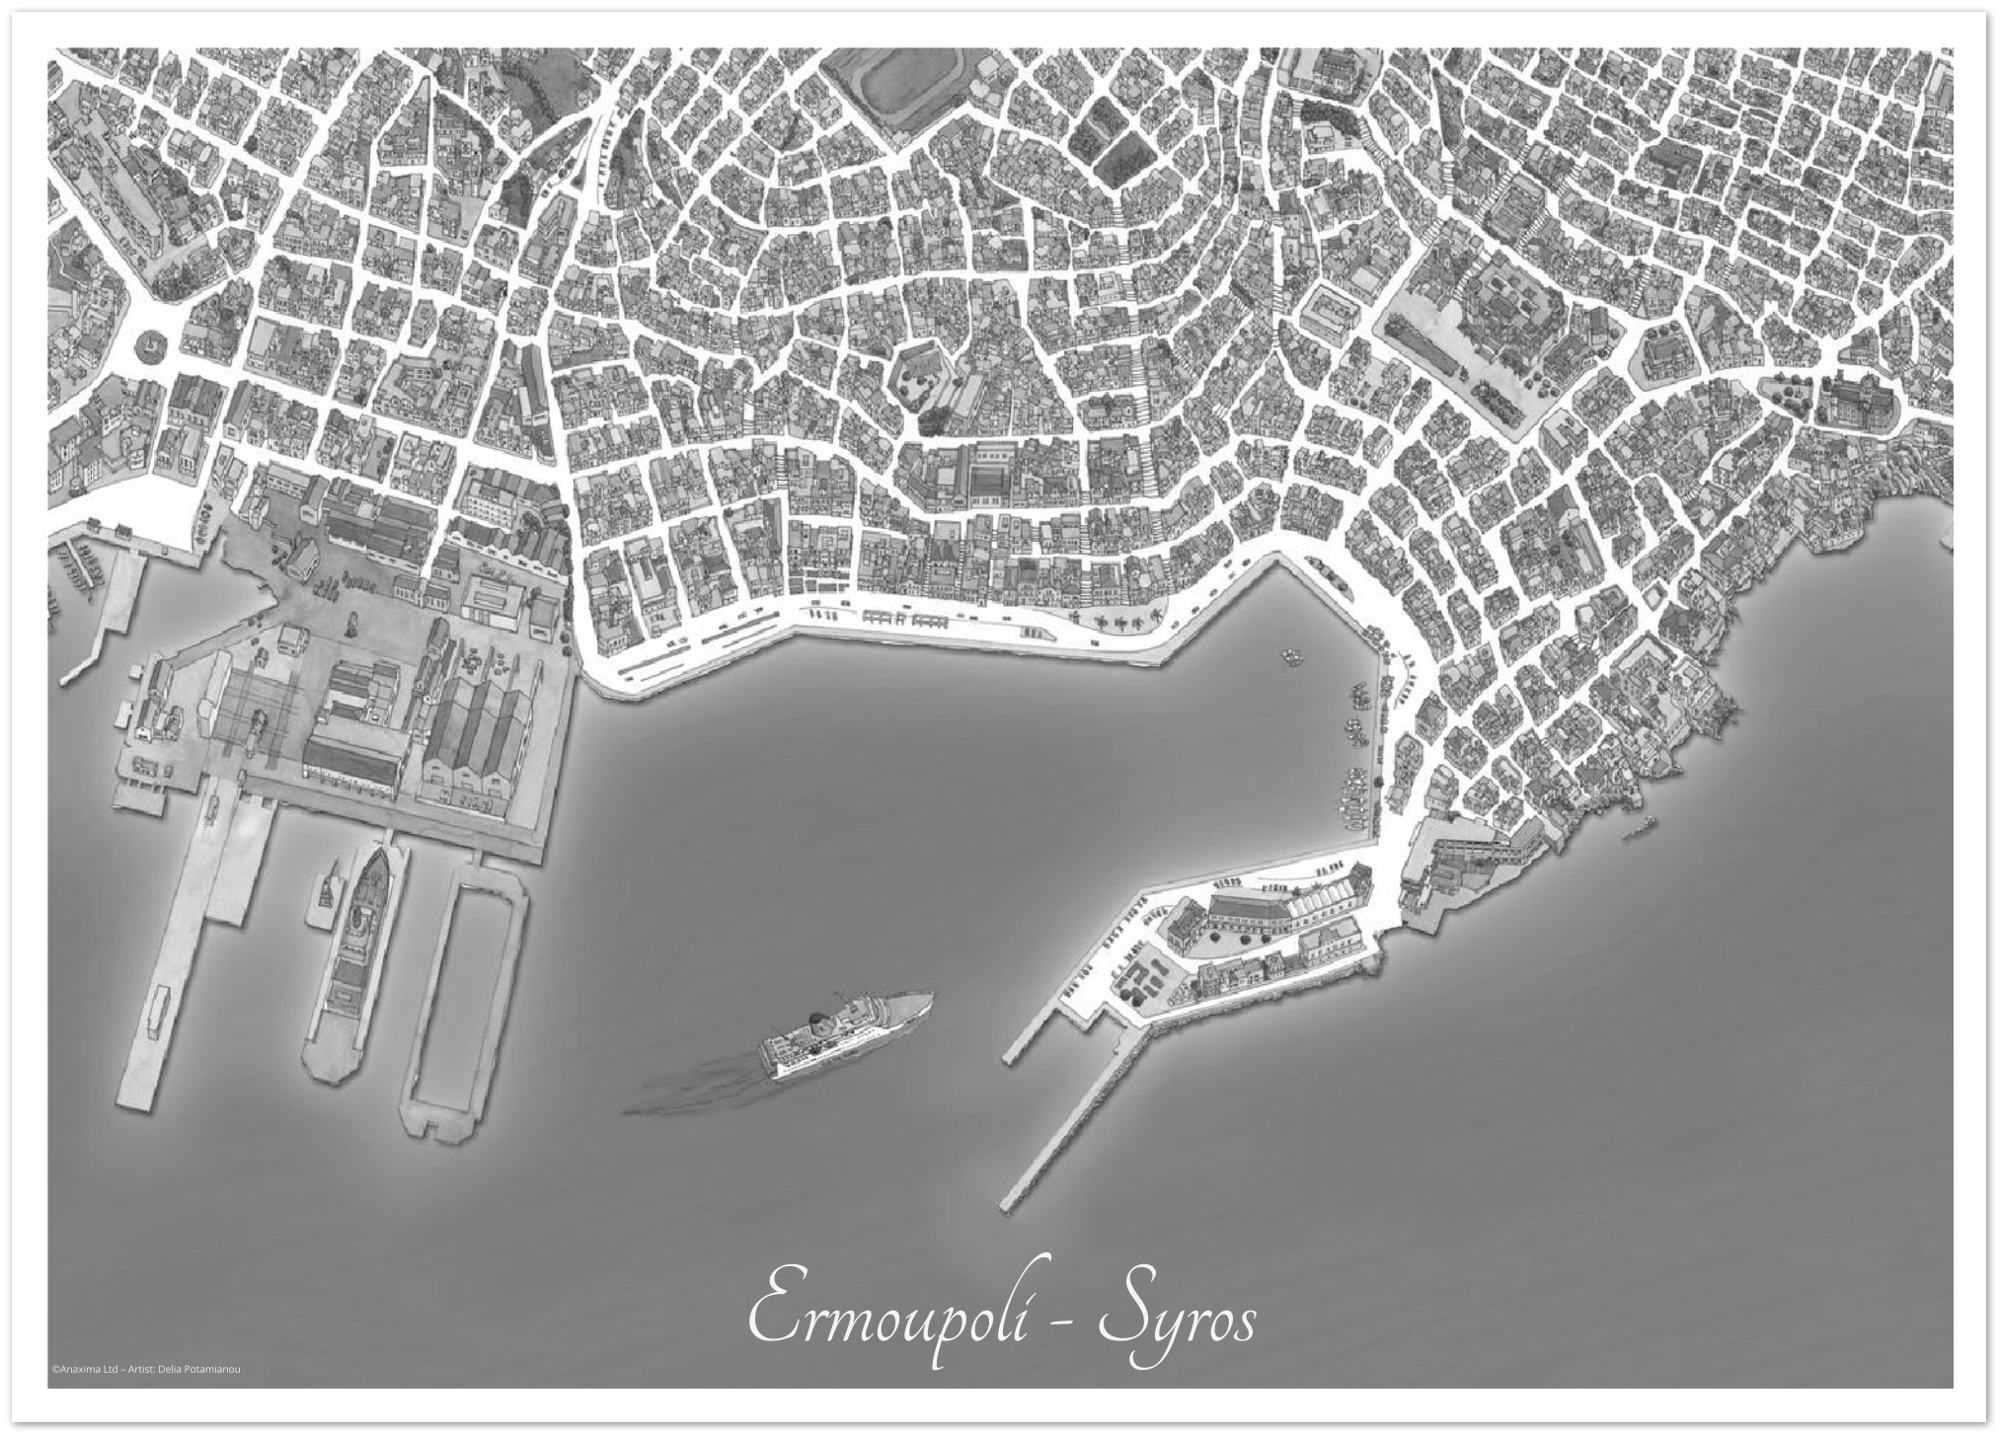 Ermoupoli, Syros, Greece - Black & White - Premium Semi-Glossy Paper Poster